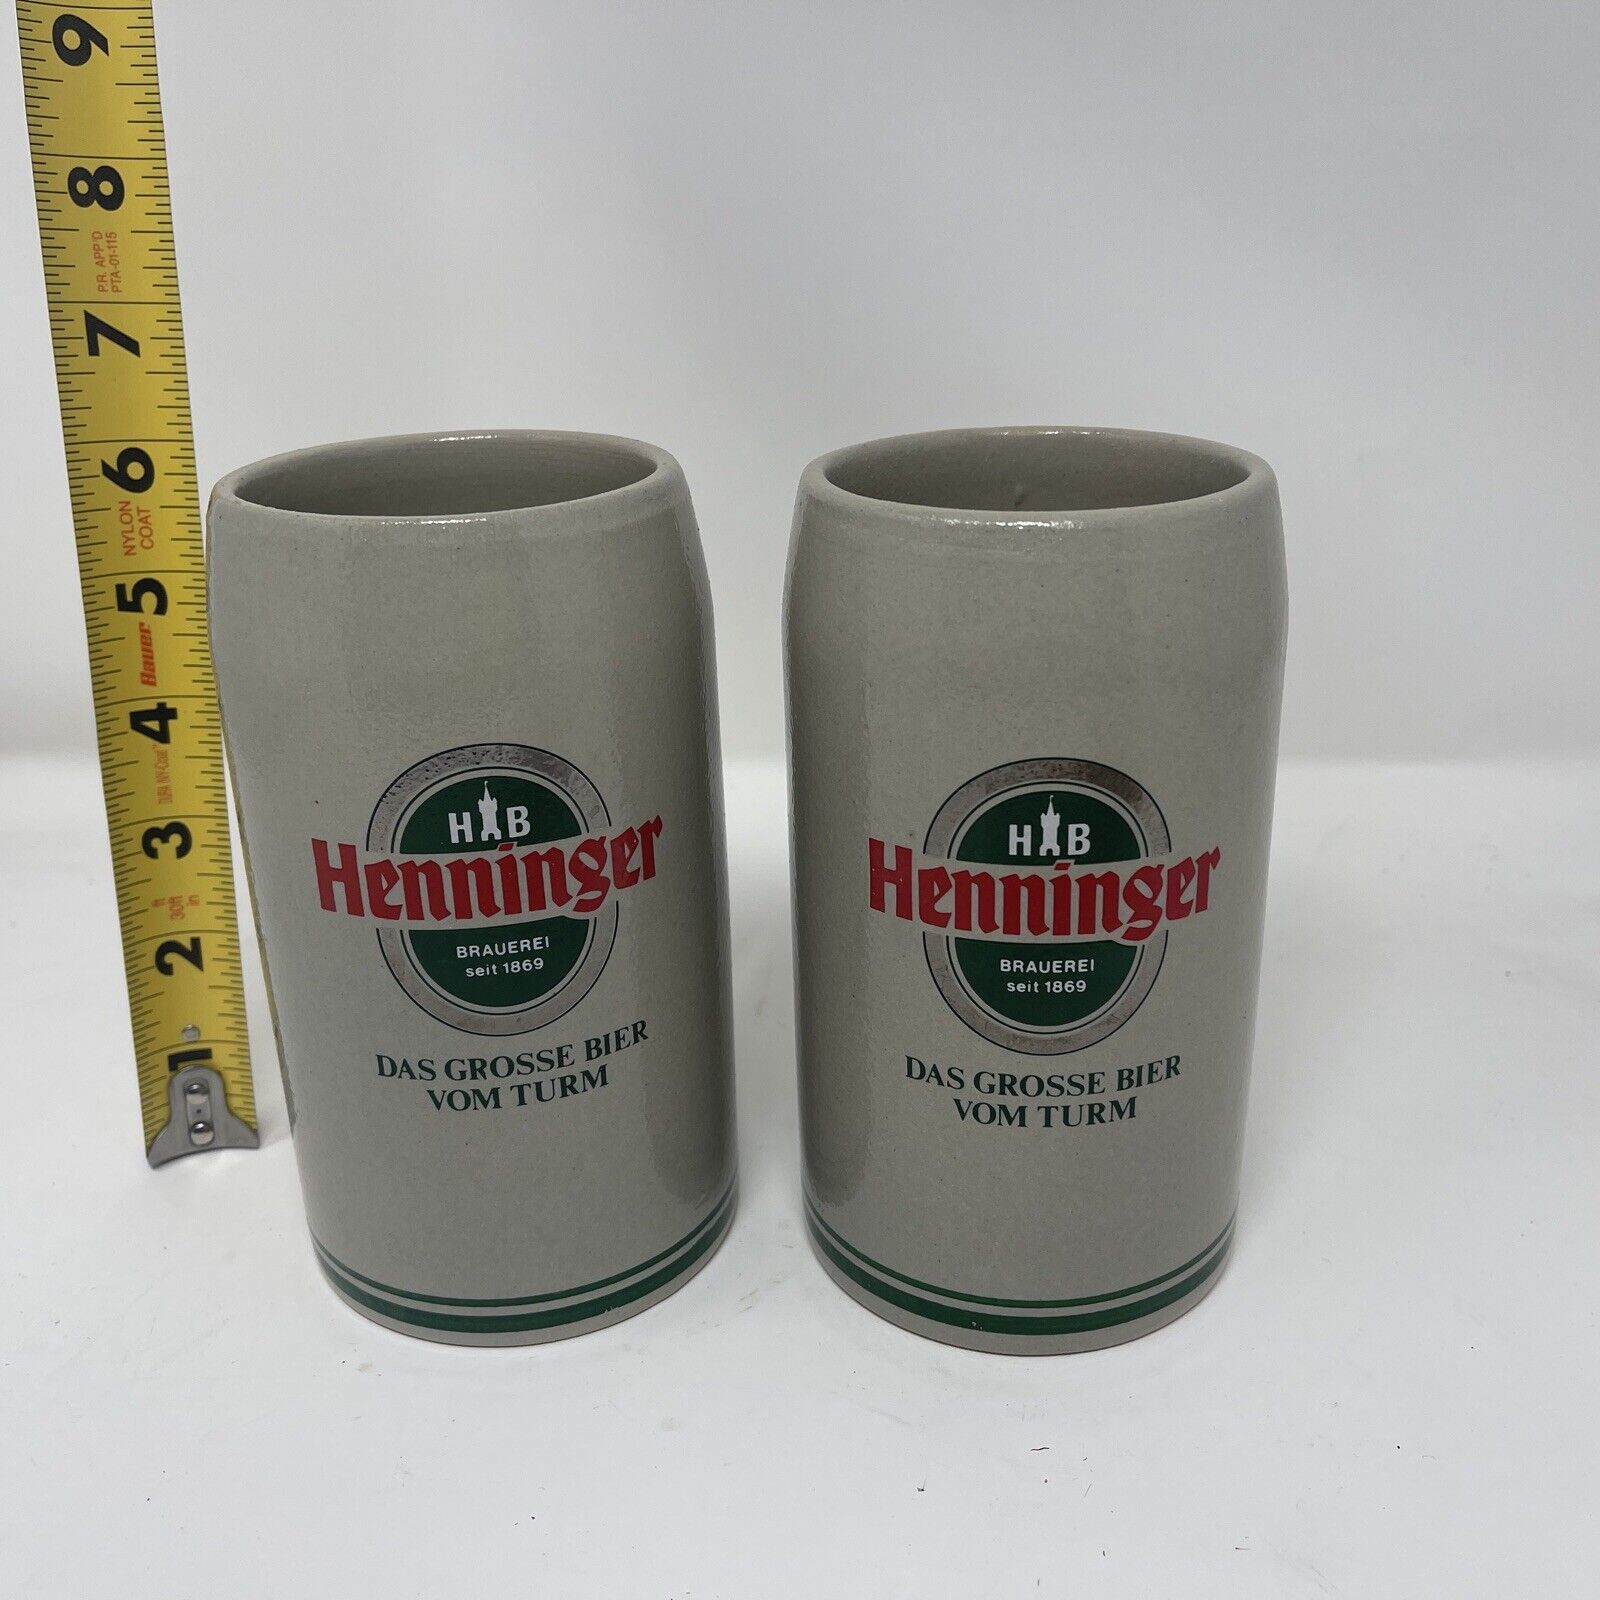 Vintage German Salt Glaze Ceramic Henninger Beer Stein 6” VTG Mug From Germany